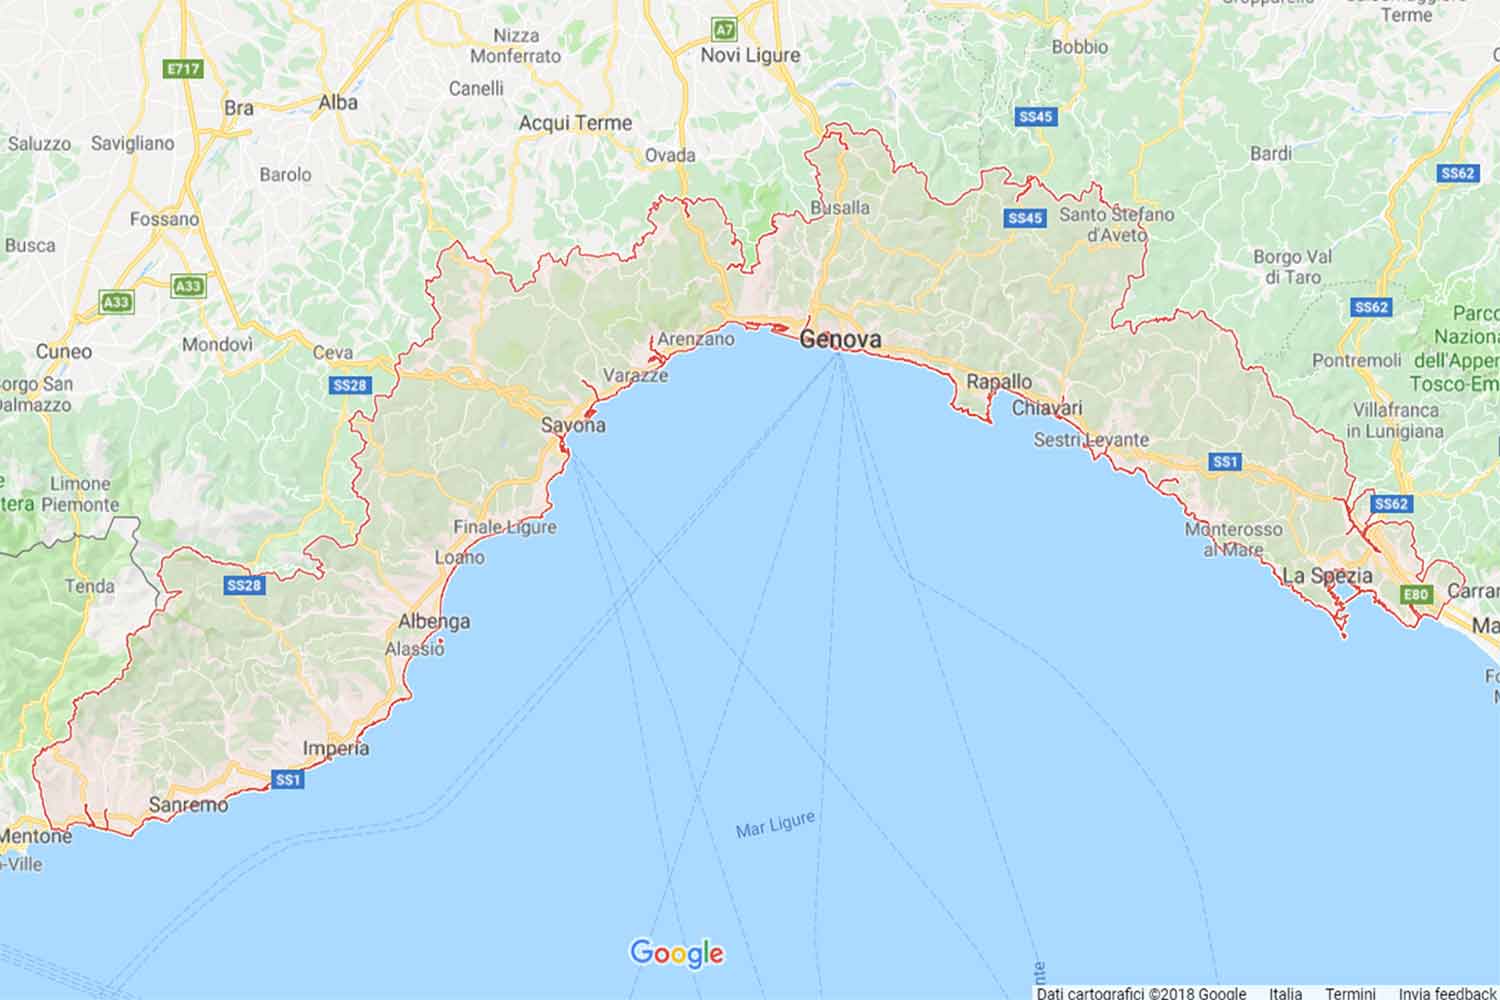 Liguria - La Spezia - Levanto Preventivi Veloci google maps